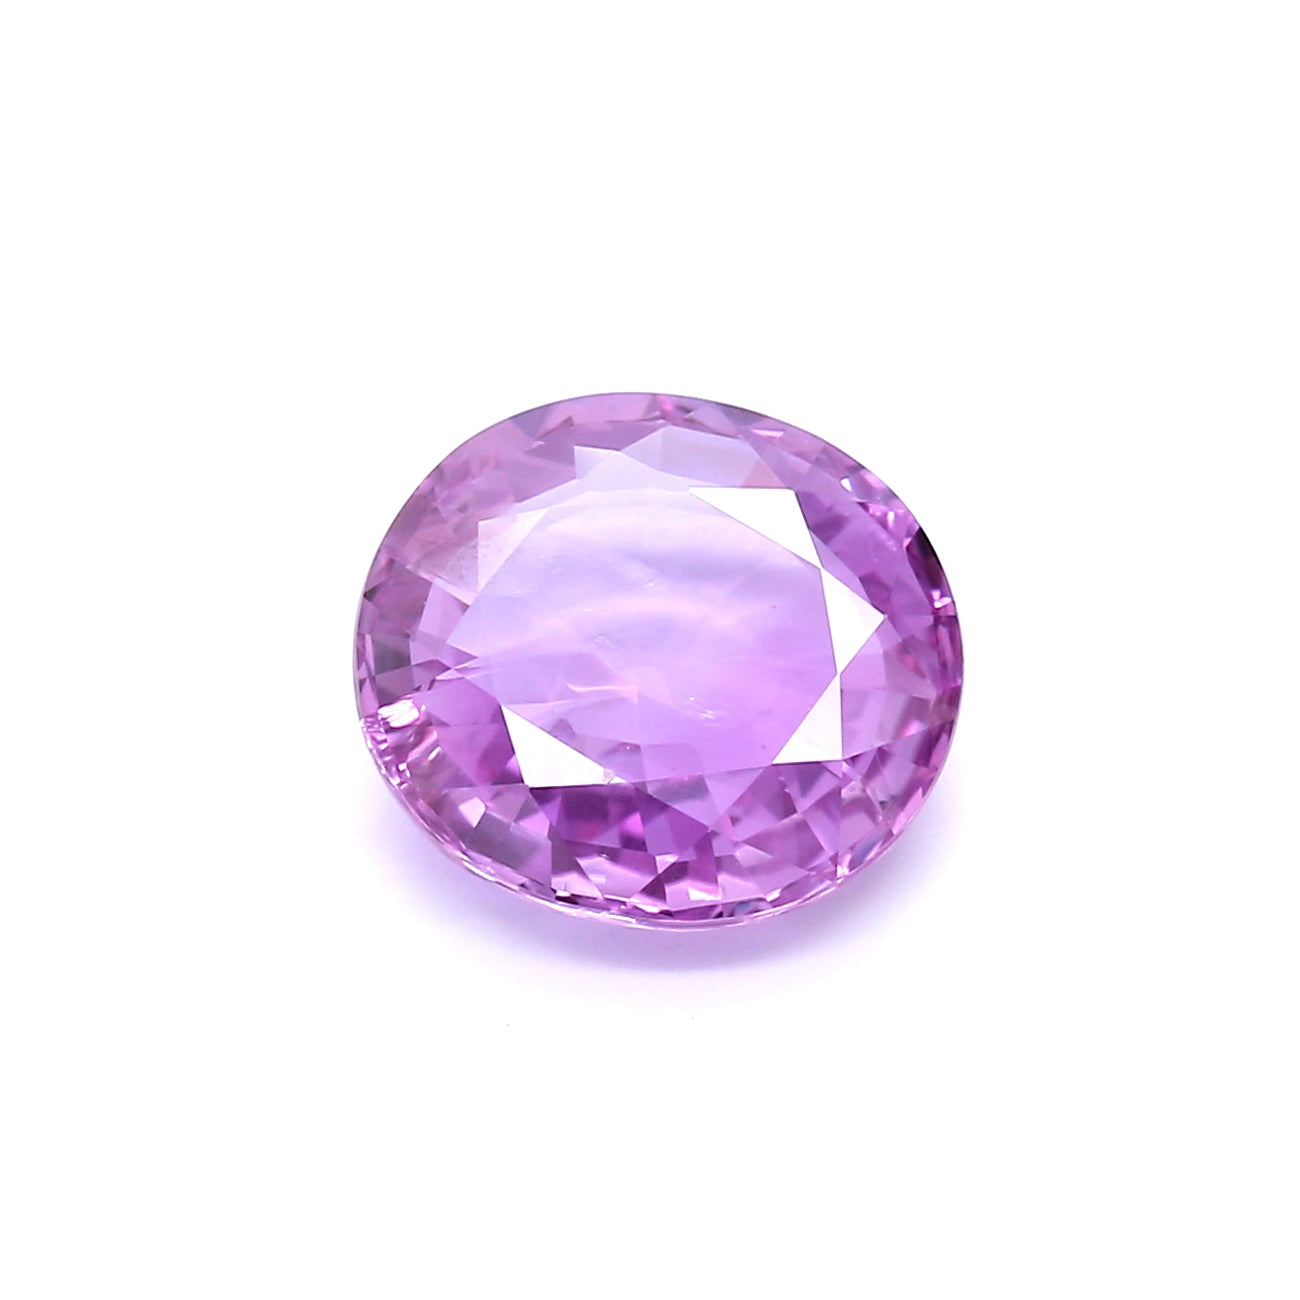 4.26ct Pinkish Purple, Oval Sapphire, No Heat, Sri Lanka - 10.63 x 9.94 x 4.11mm